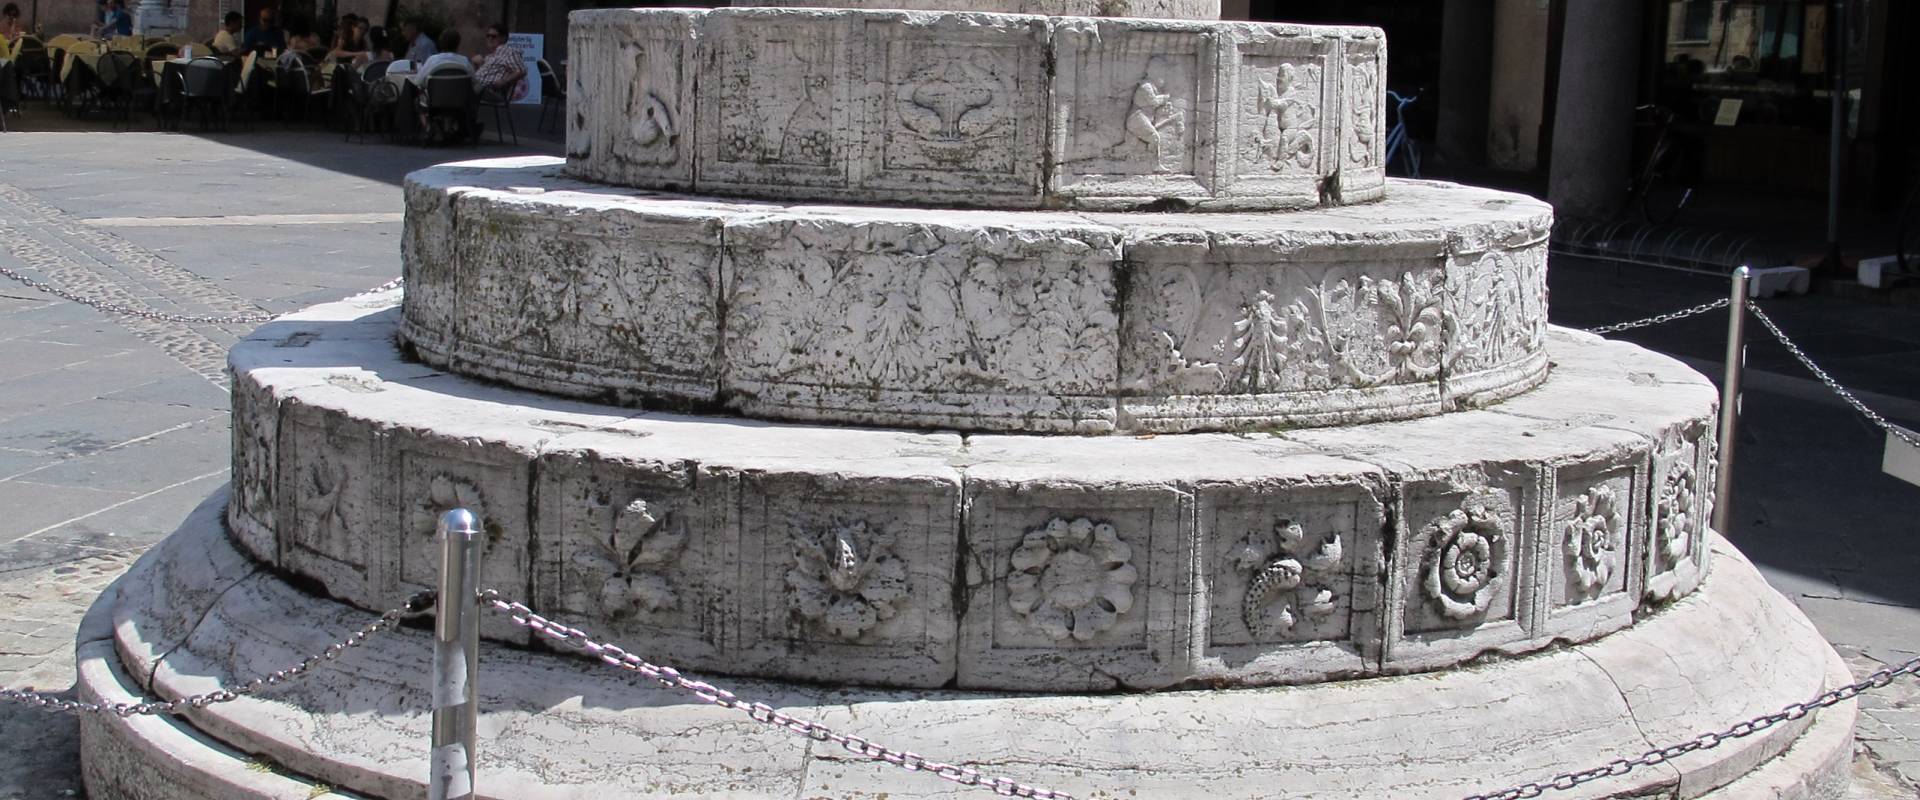 Ravenna, piazza del popolo, colonne di pietro lombardo, 1483, 01 foto di Sailko